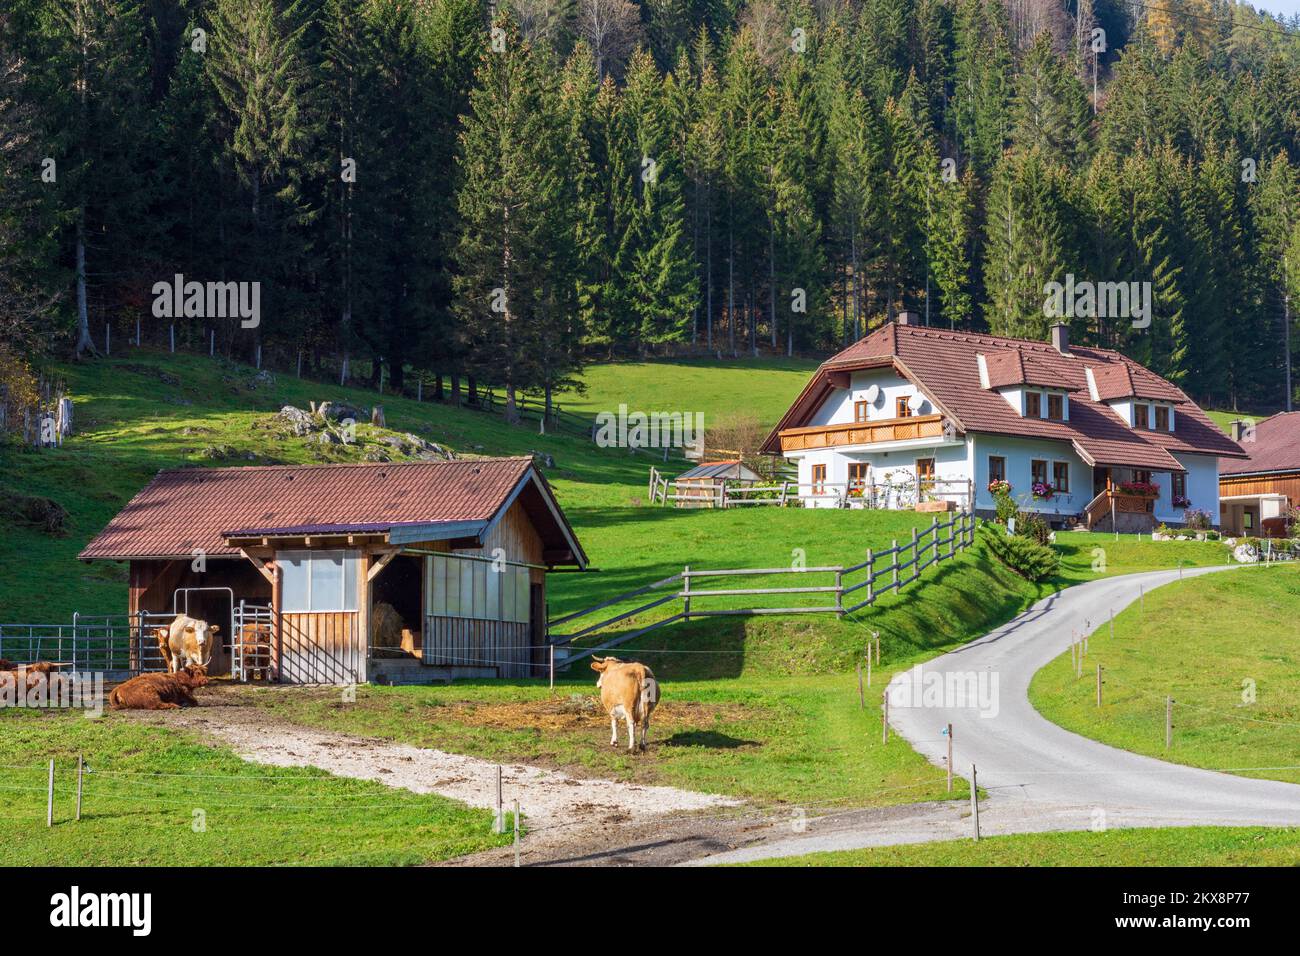 Rohr im Gebirge: farmhouse, cows in Wiener Alpen, Alps, Niederösterreich, Lower Austria, Austria Stock Photo